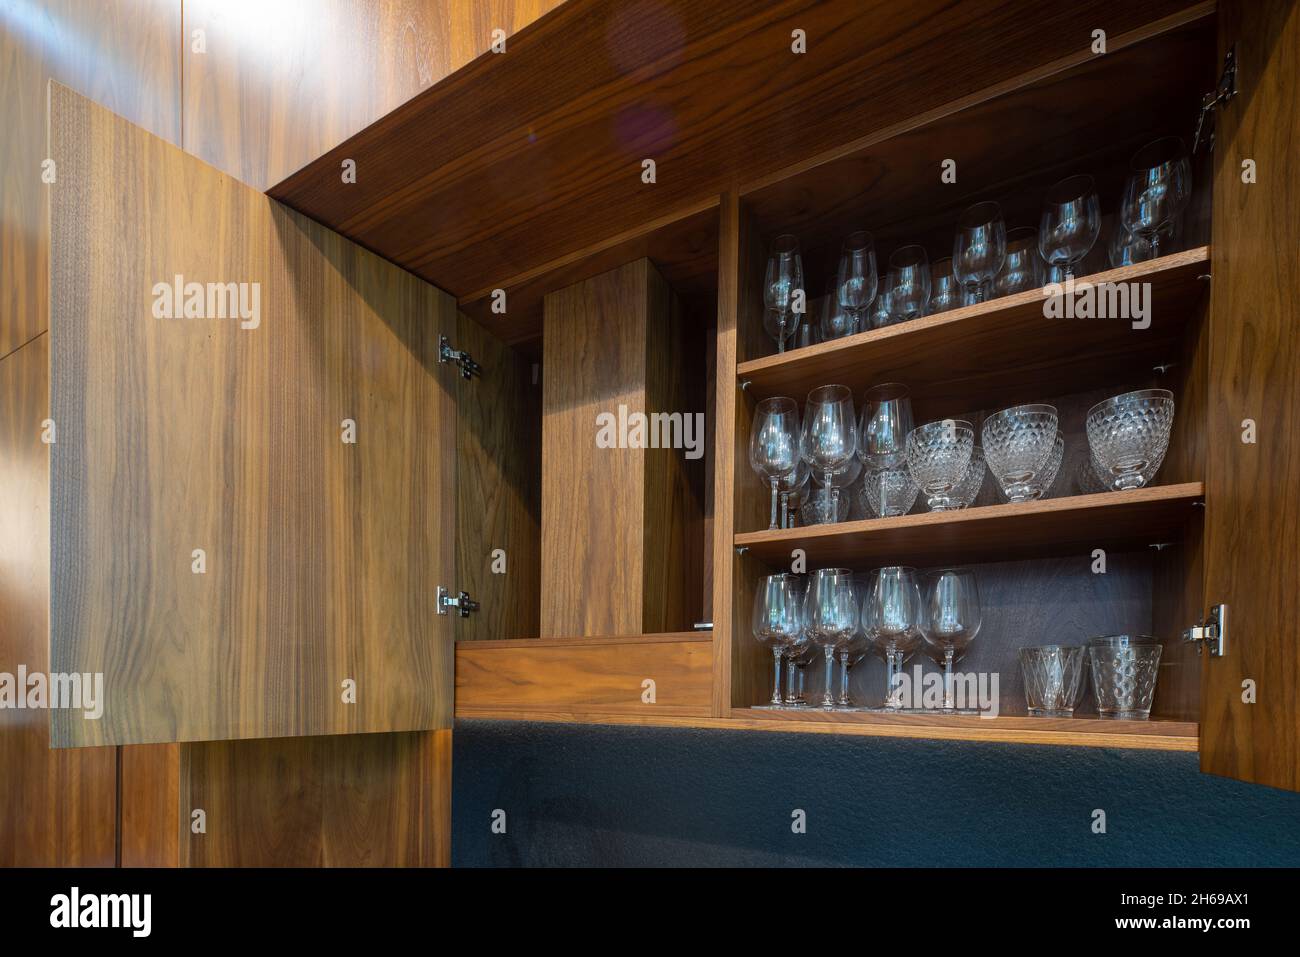 Modernes Interieur der Luxus-Wohnung. Stilvolle Holzküche. Schrank geöffnet. Gläser auf Regalen. Stockfoto